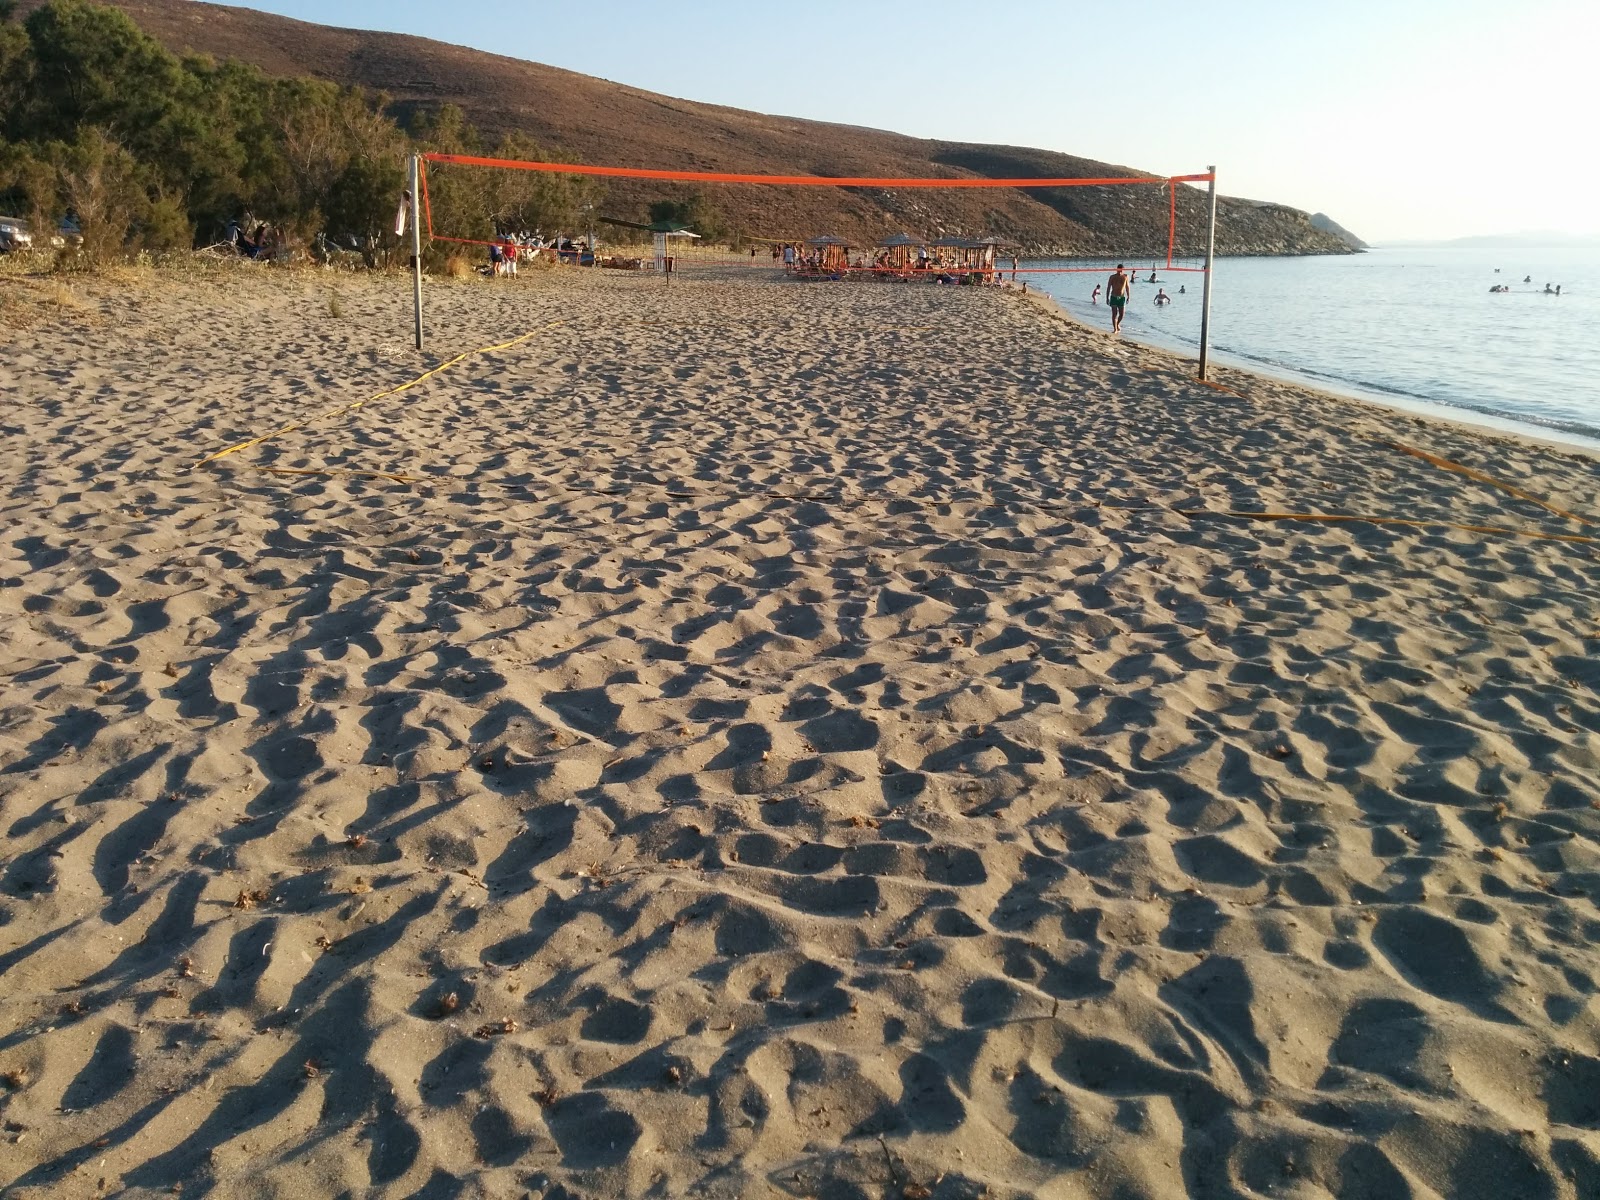 Fotografija Zematas beach priljubljeno mesto med poznavalci sprostitve